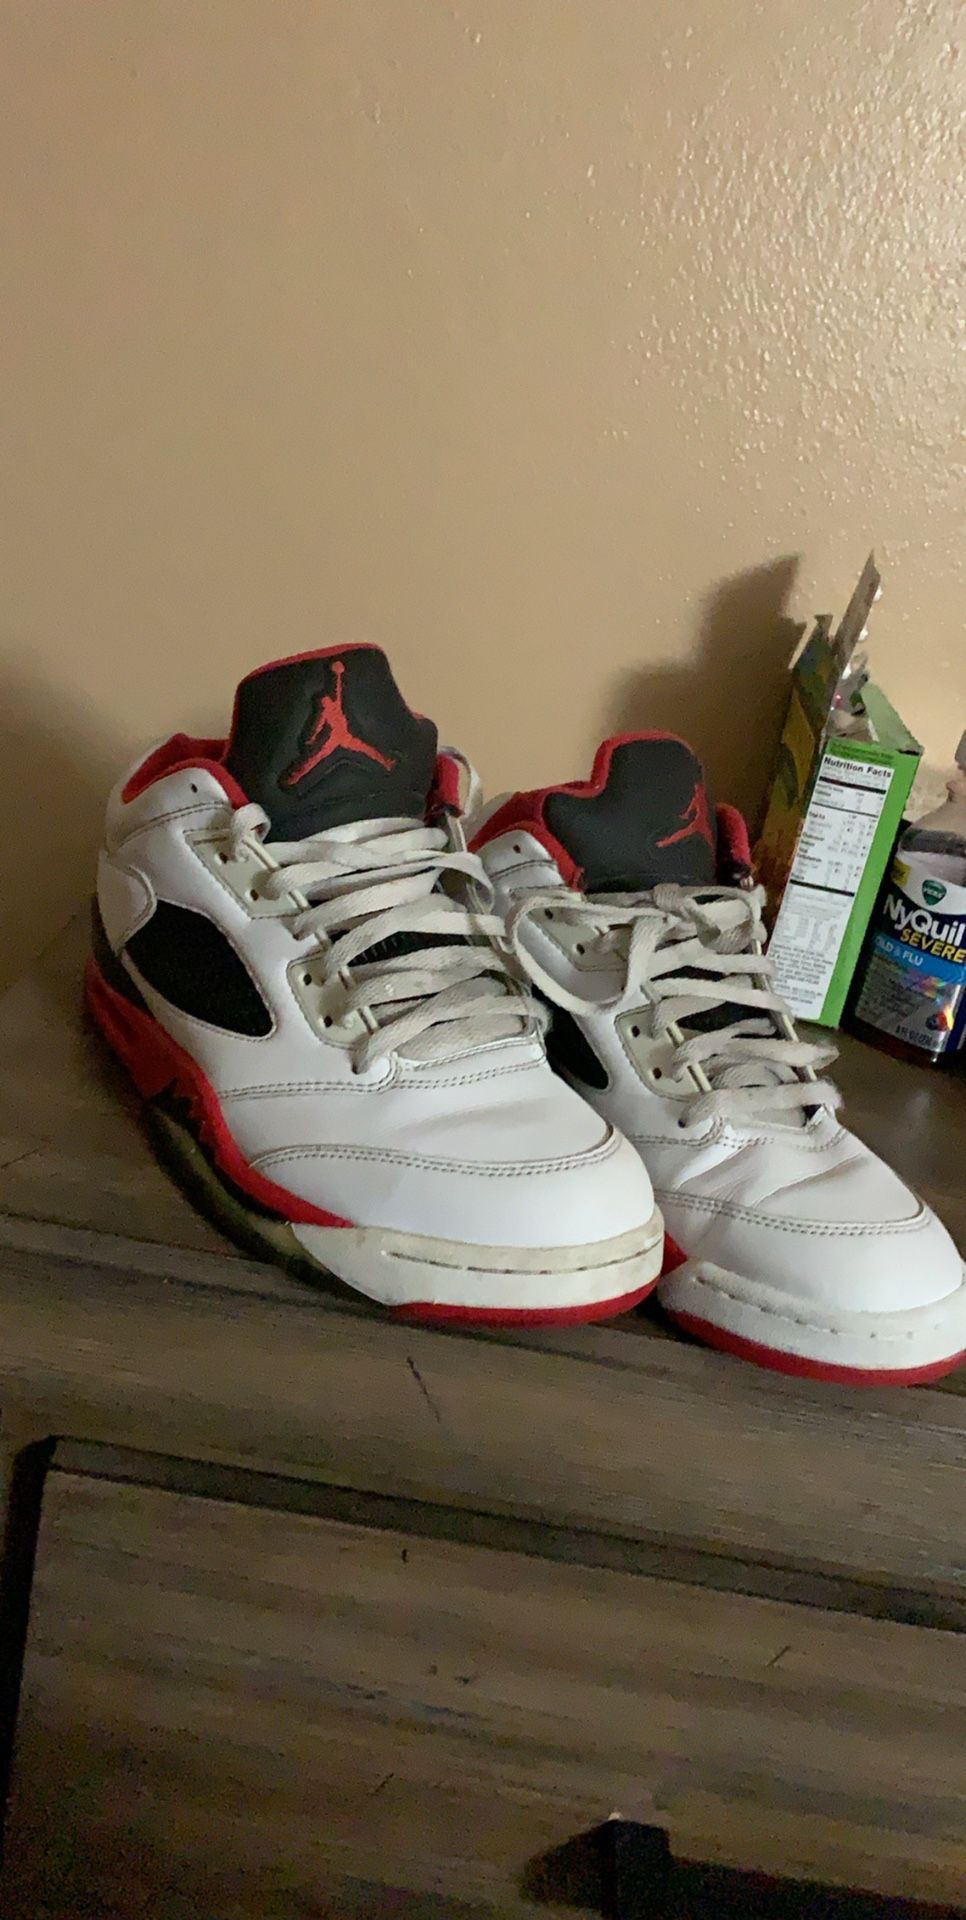 Jordans retro 5 size 10